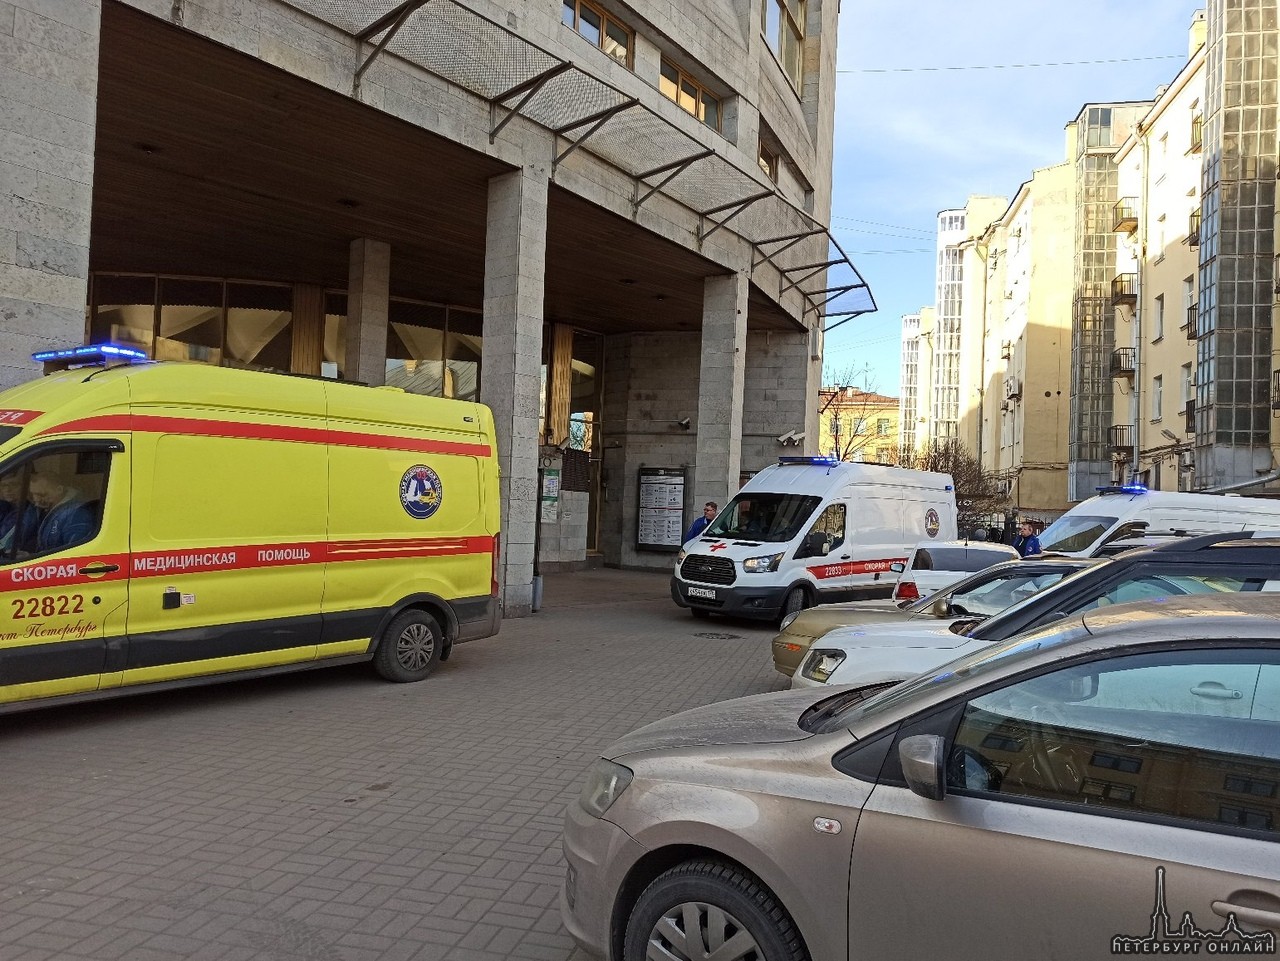 У станции метро площадь Александра Невского. 3 бригады скорой помощи и около 5 пожарных машин